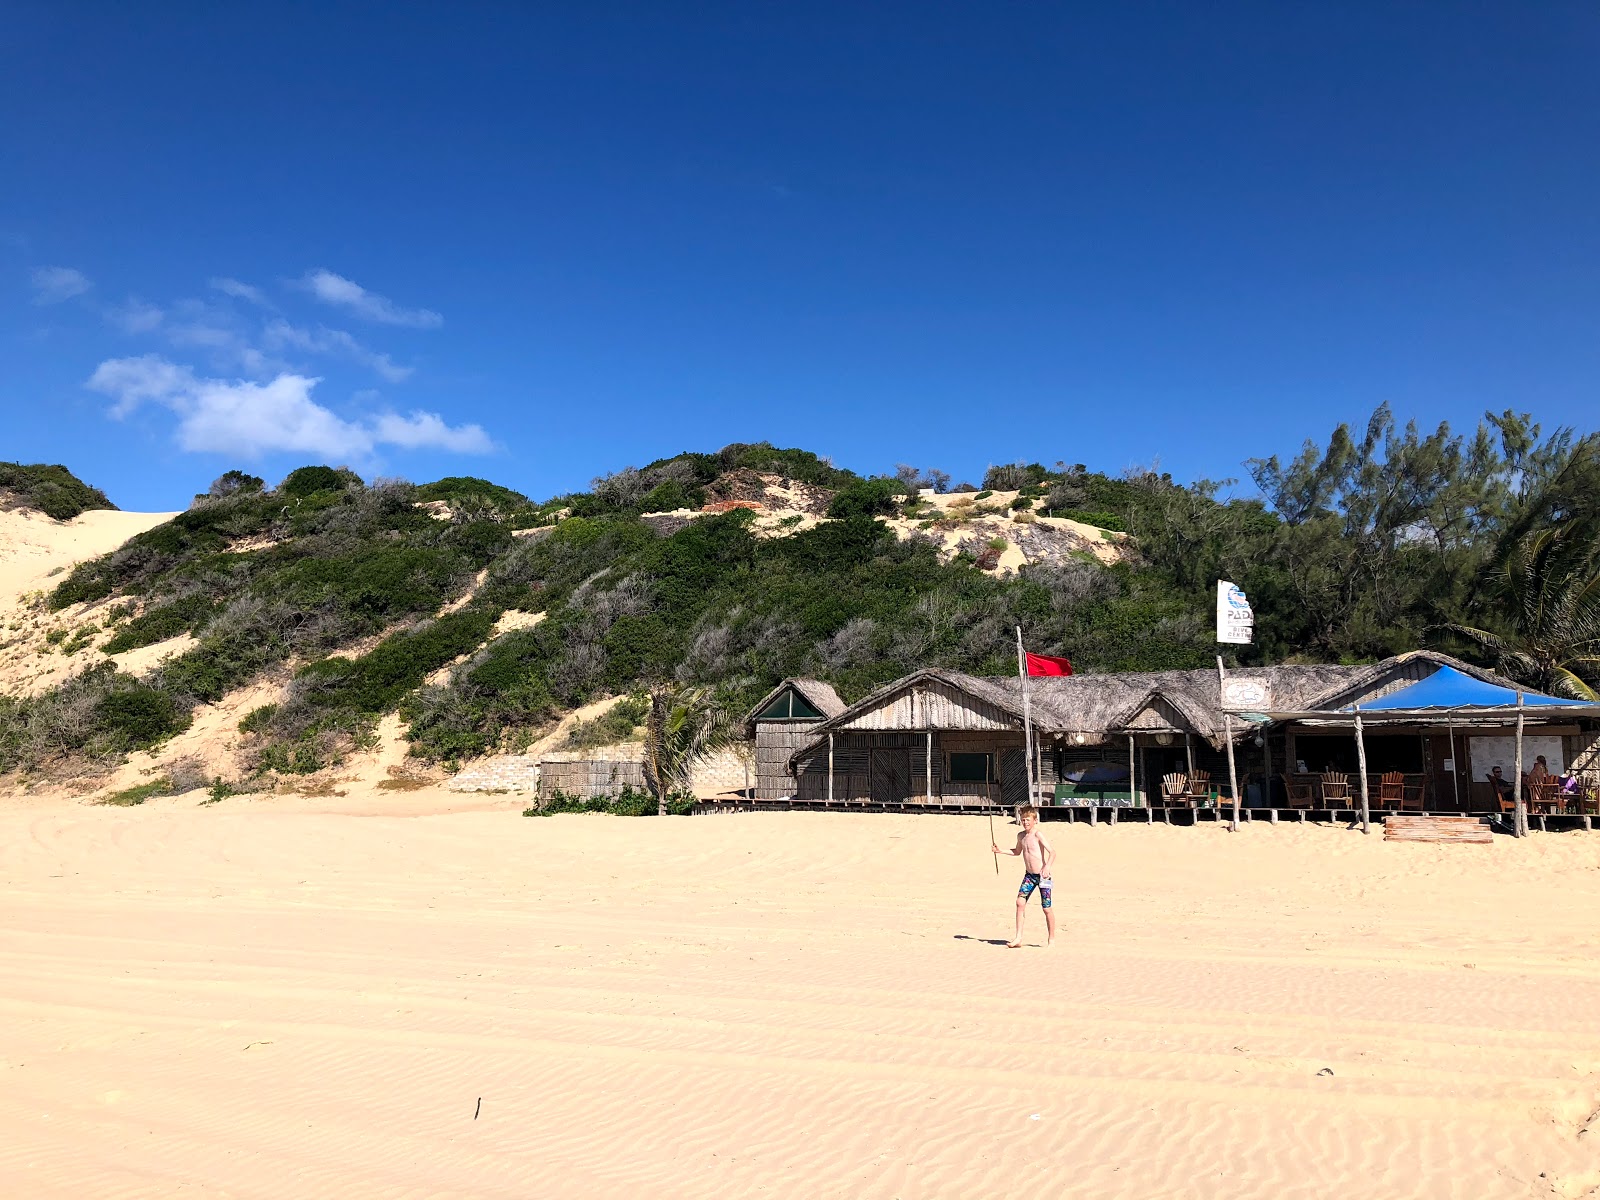 Foto af Praia de Jangamo - populært sted blandt afslapningskendere